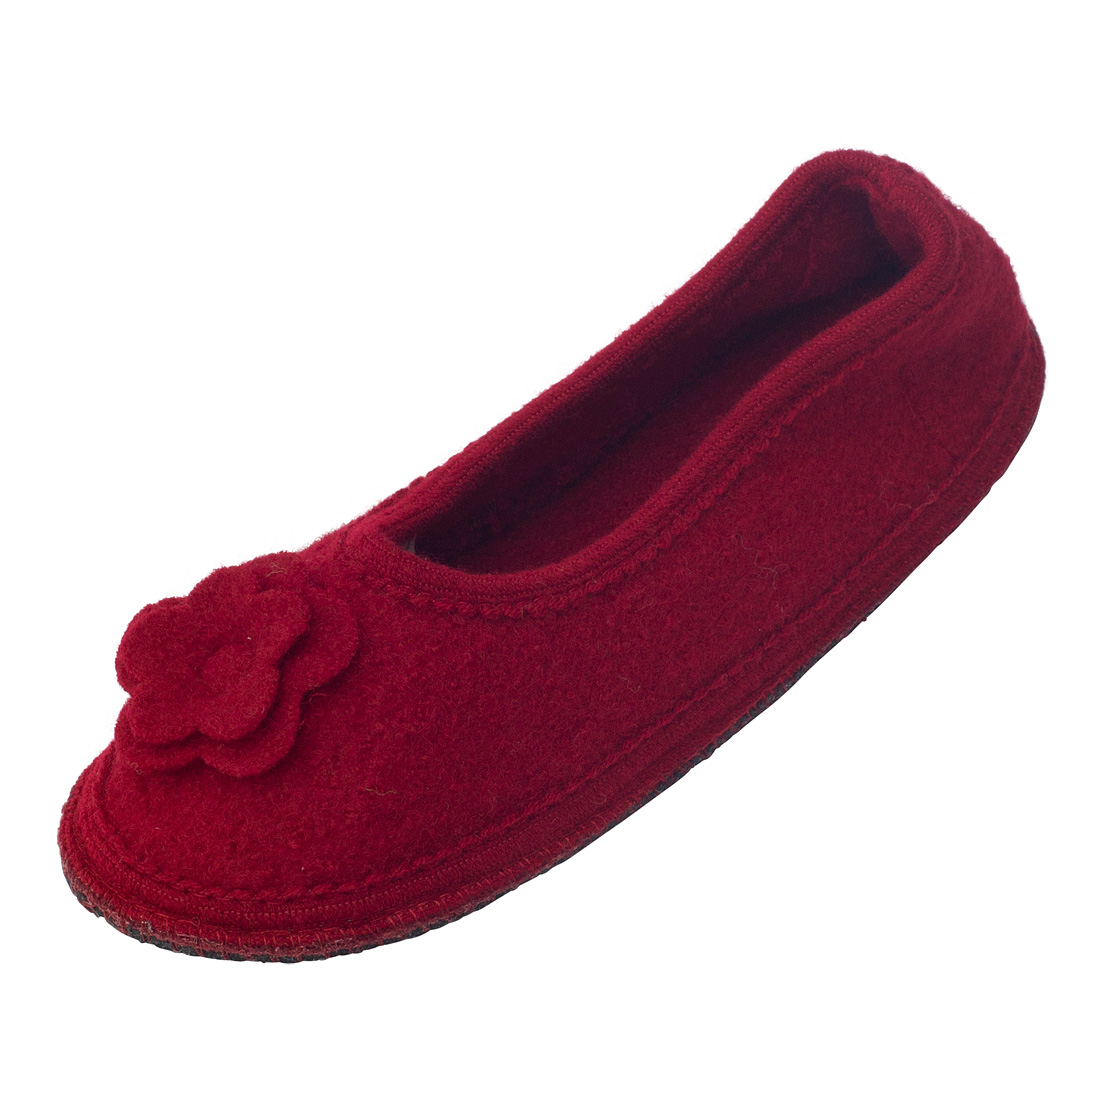 Pantofole Ballerine da donna in pura lana cotta Rosso Scuro_85756